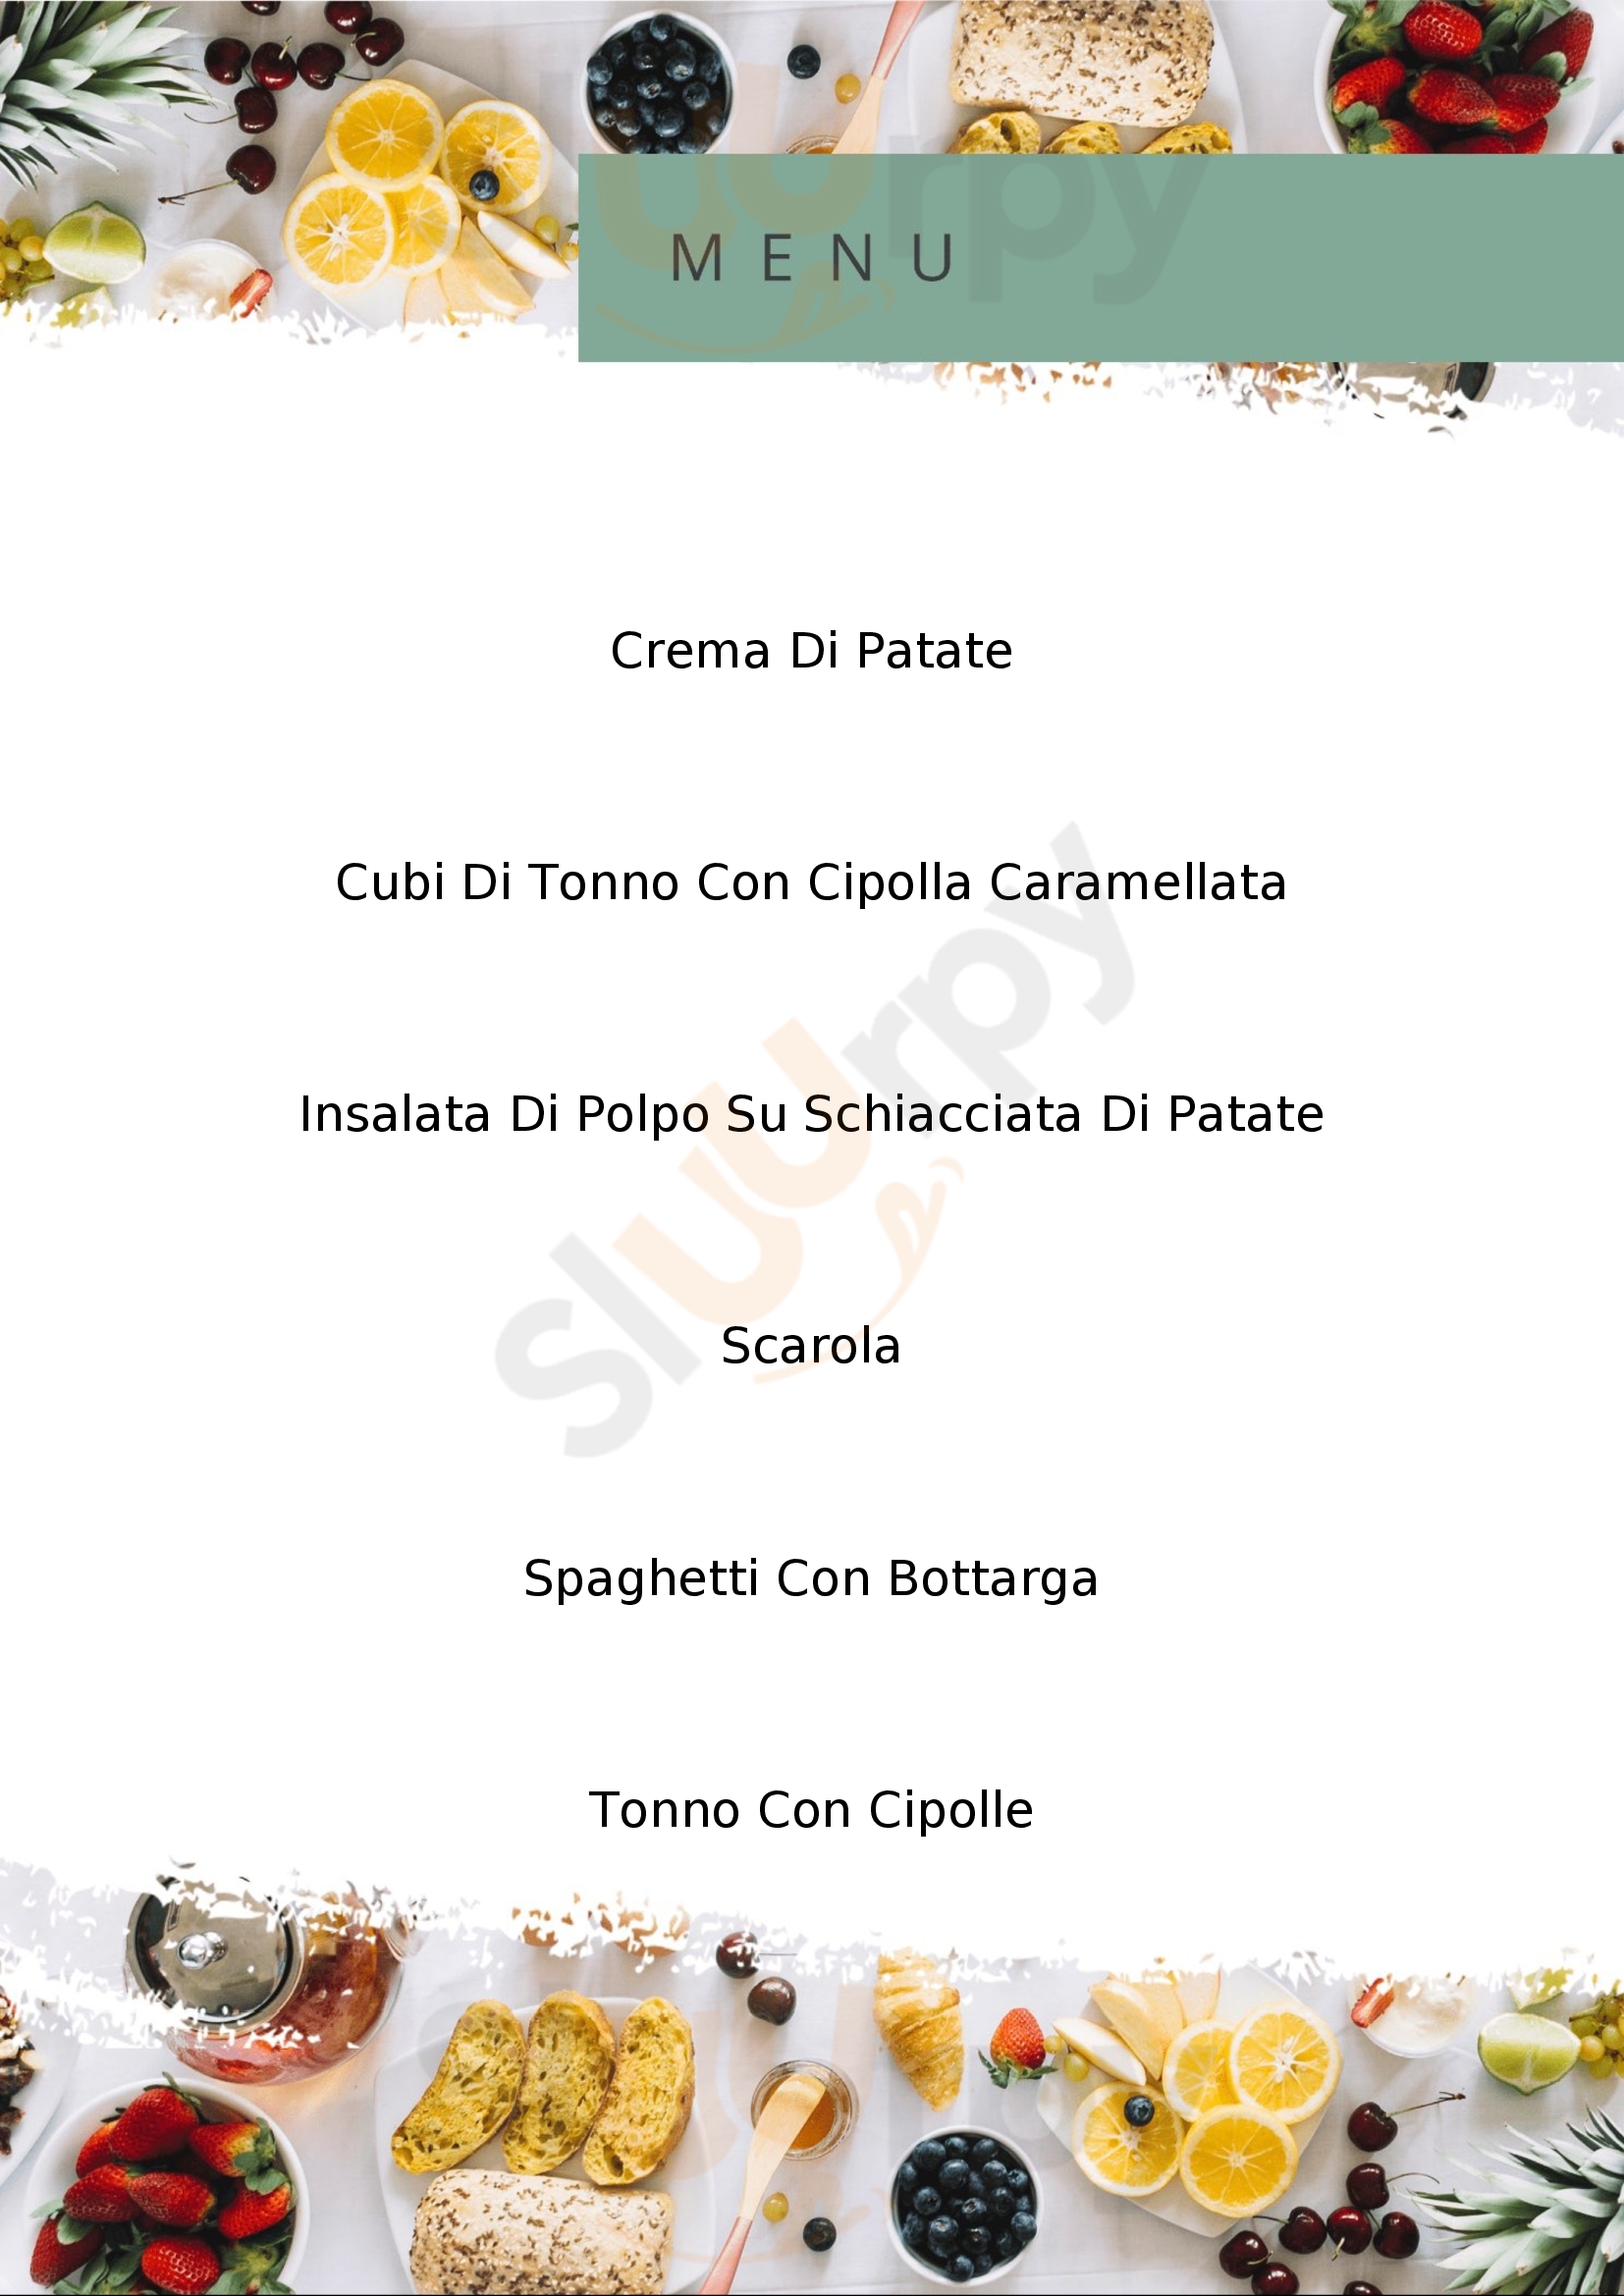 Oresteria by Ponza Fish Ponza menù 1 pagina